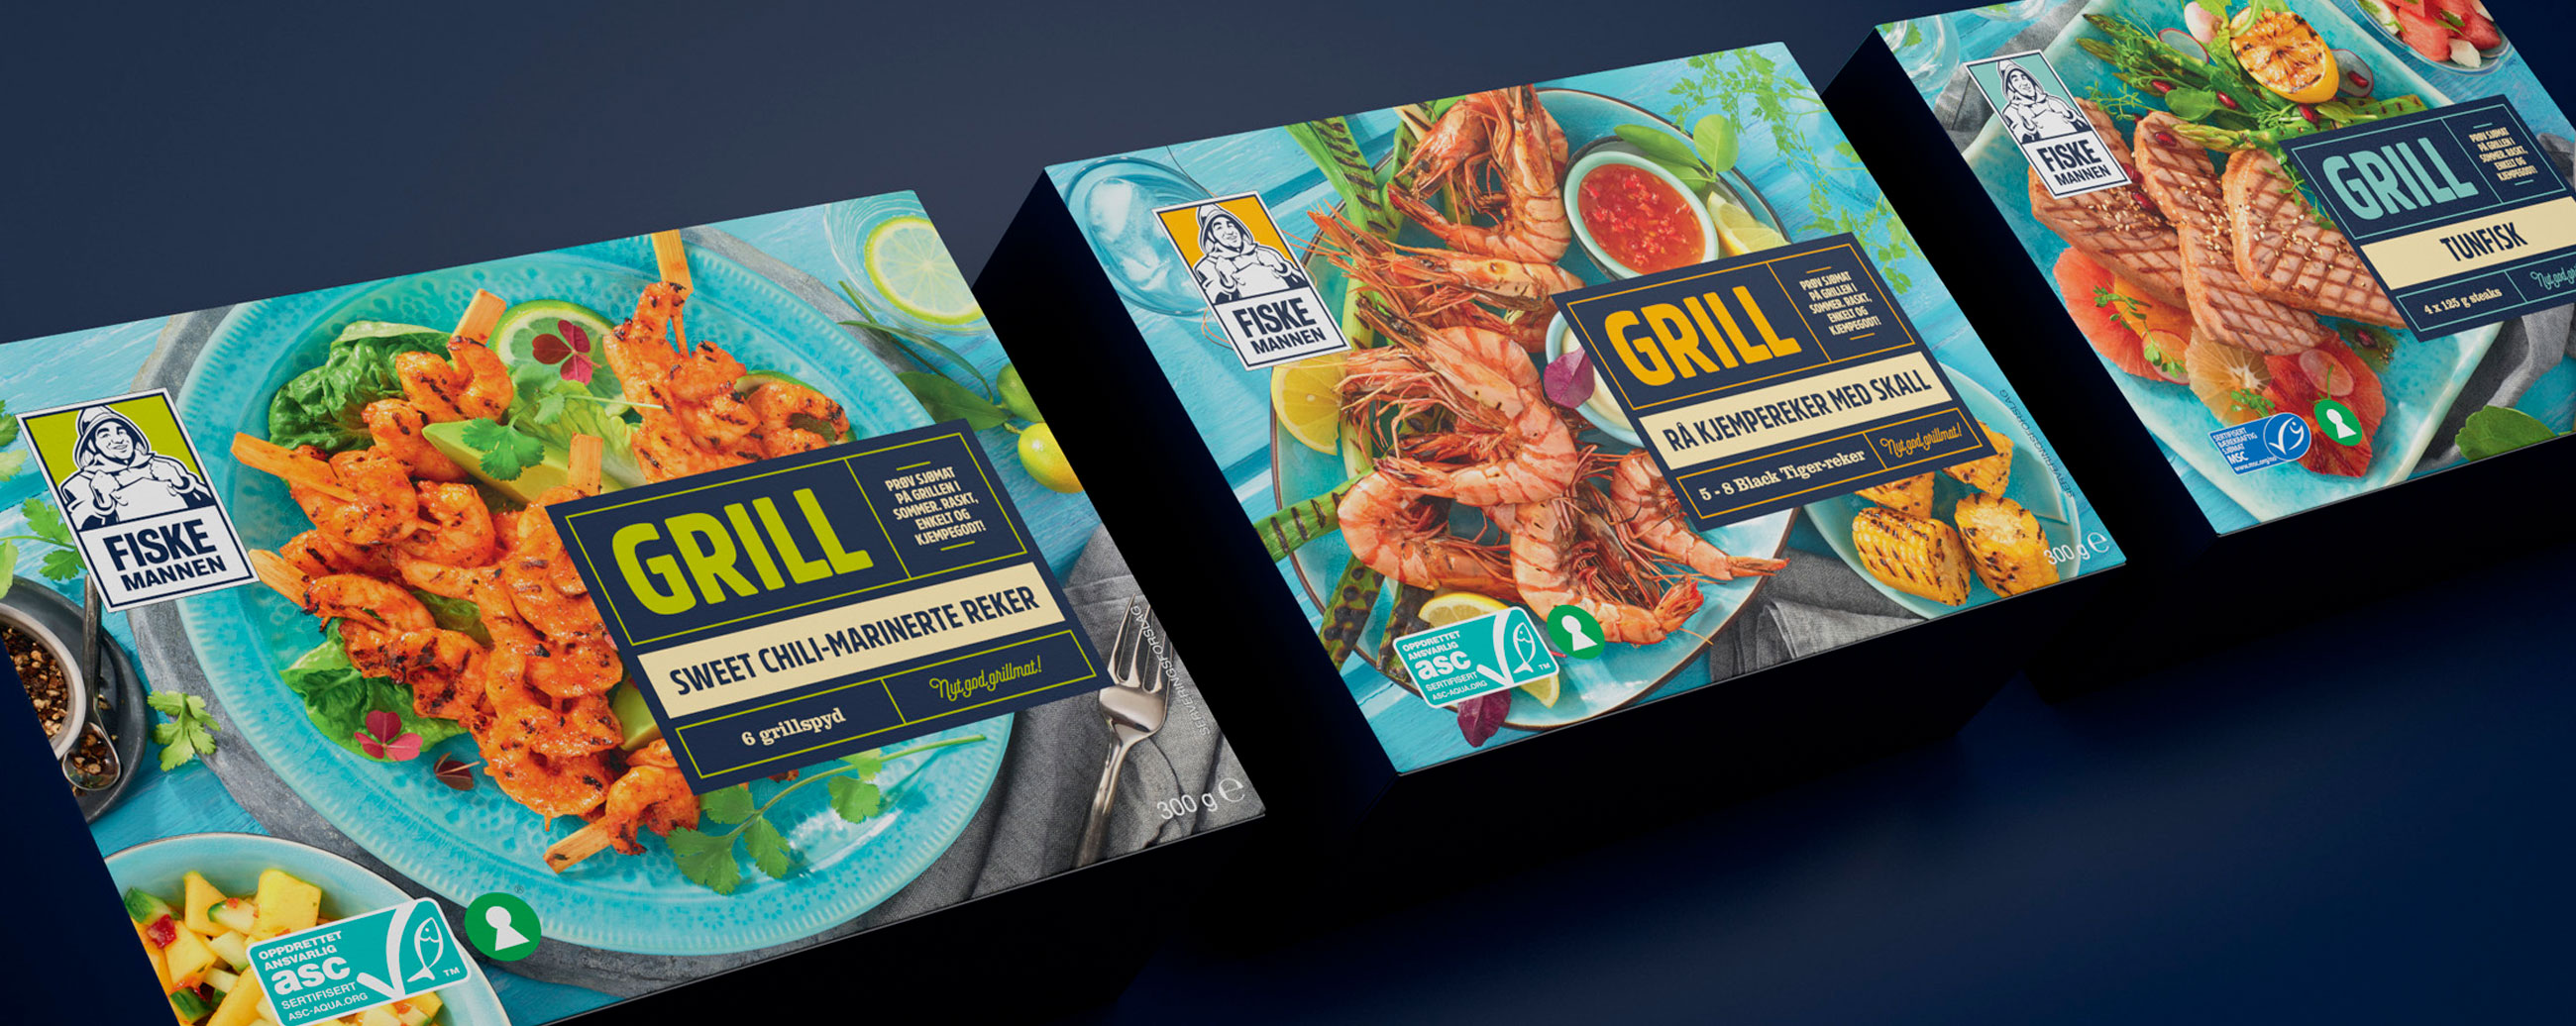 Fiskemannen Grill, sweet chili-marinerte reker, rå kjempereker med skall, tunfisk. Emballasje packaging design.